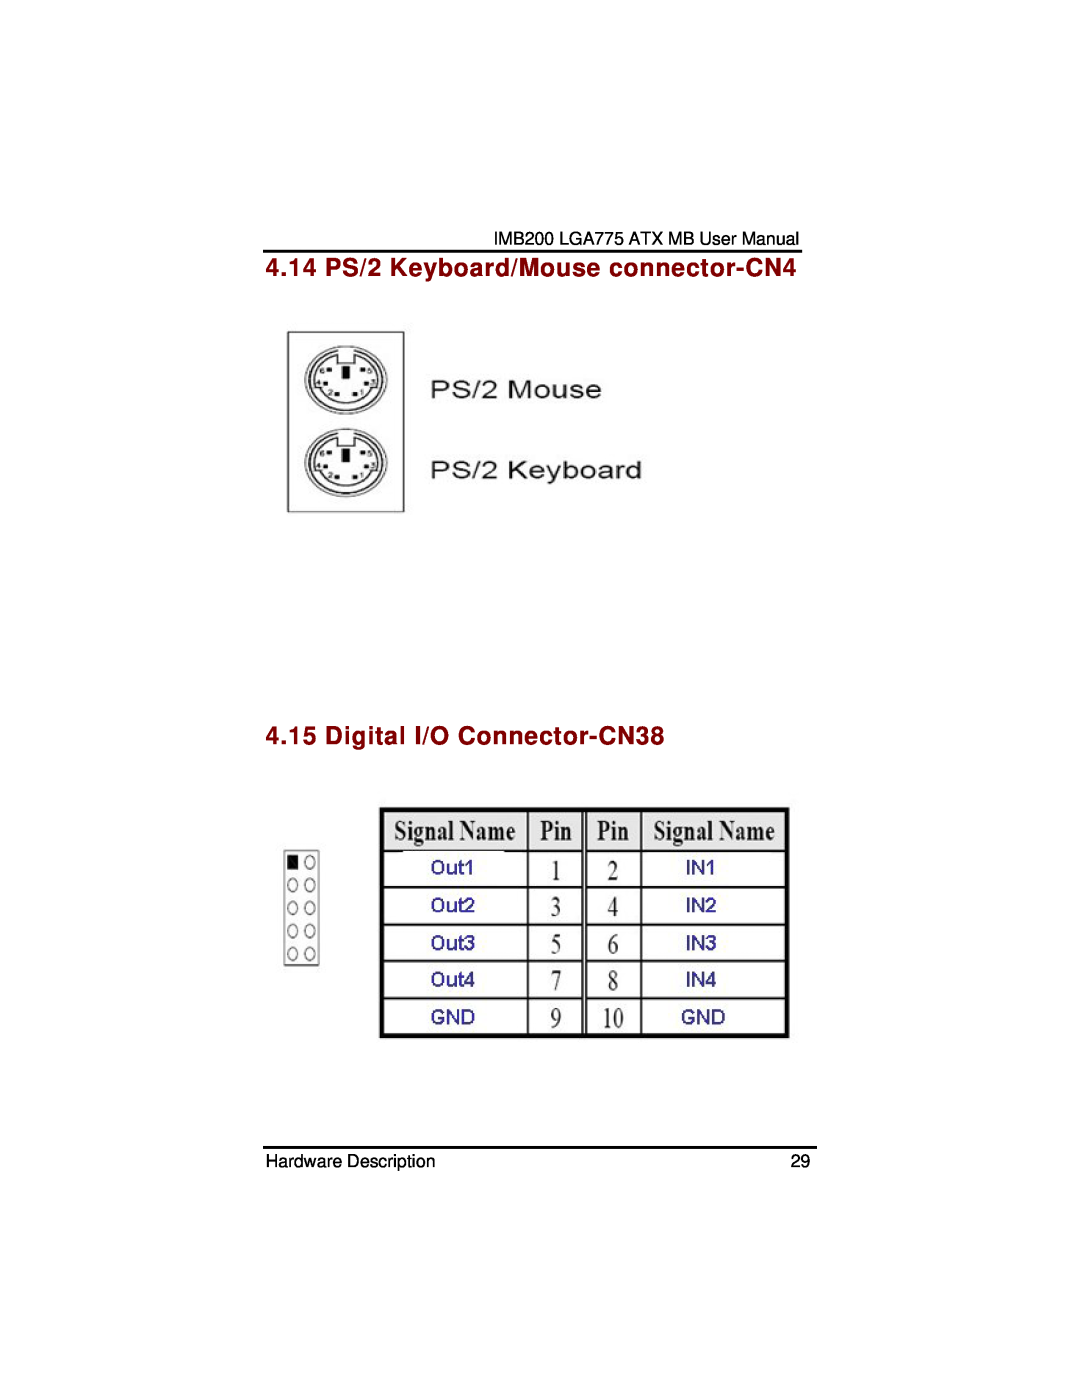 Intel IMB200VG 4.14 PS/2 Keyboard/Mouse connector-CN4, Digital I/O Connector-CN38, IMB200 LGA775 ATX MB User Manual 